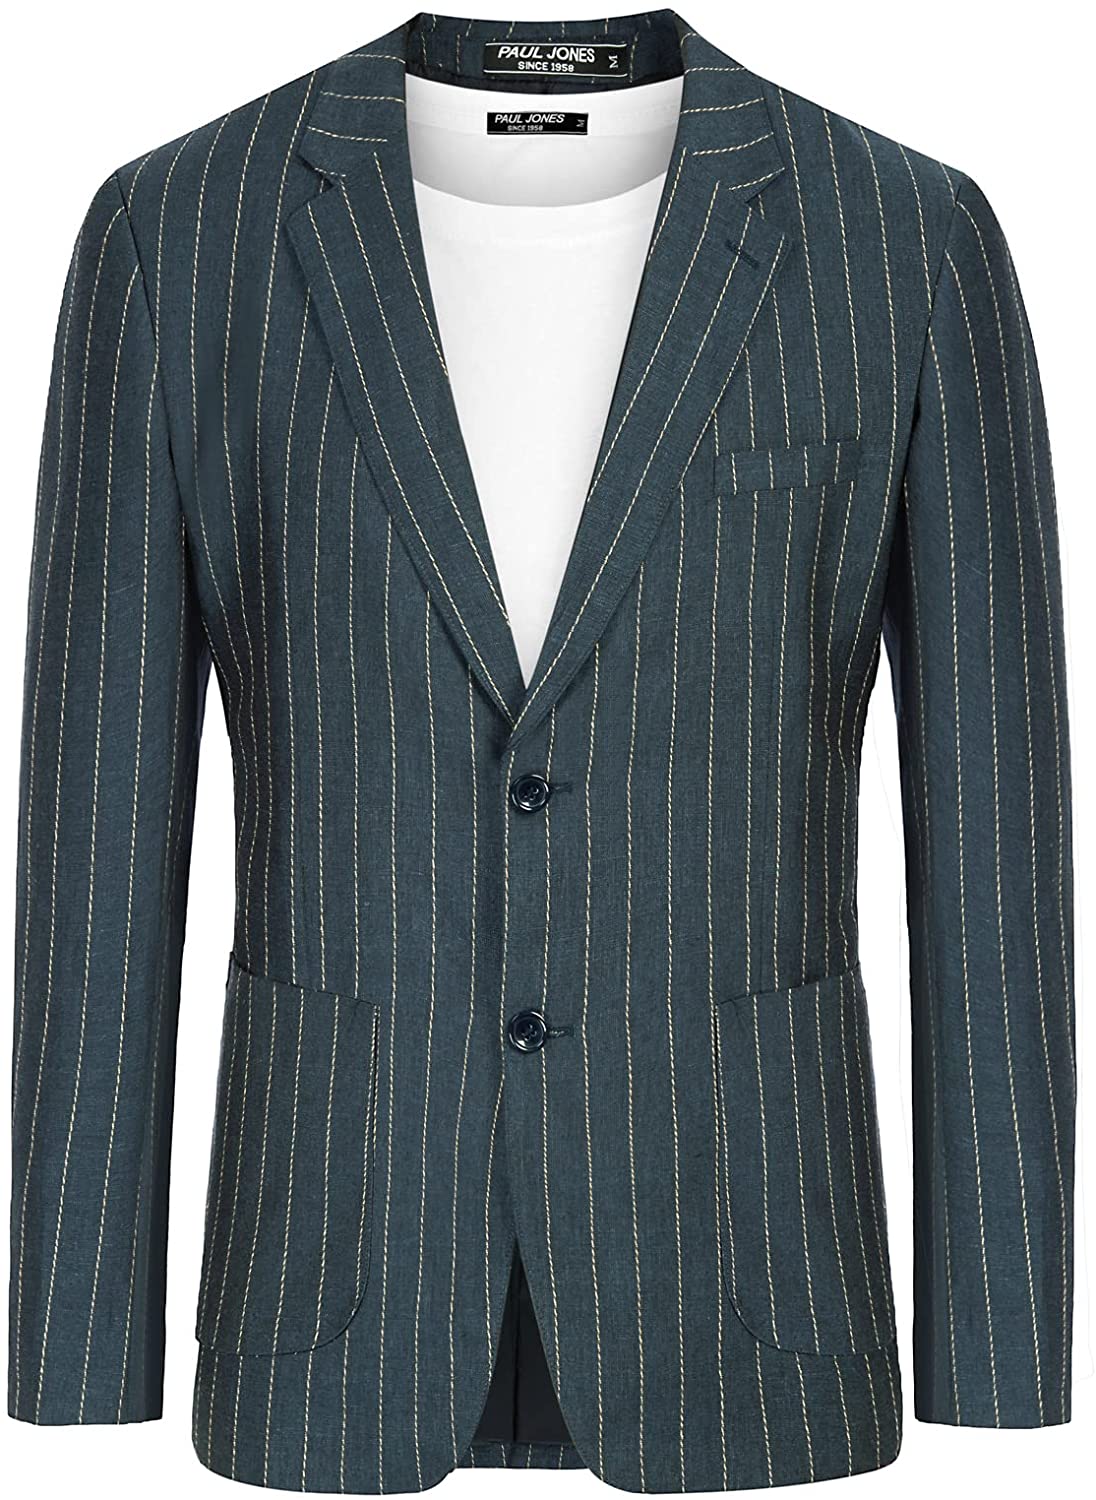 PJ PAUL JONES Men's Slim Fit Lightweight Linen Jacket Tailored Blazer Sport Coat 